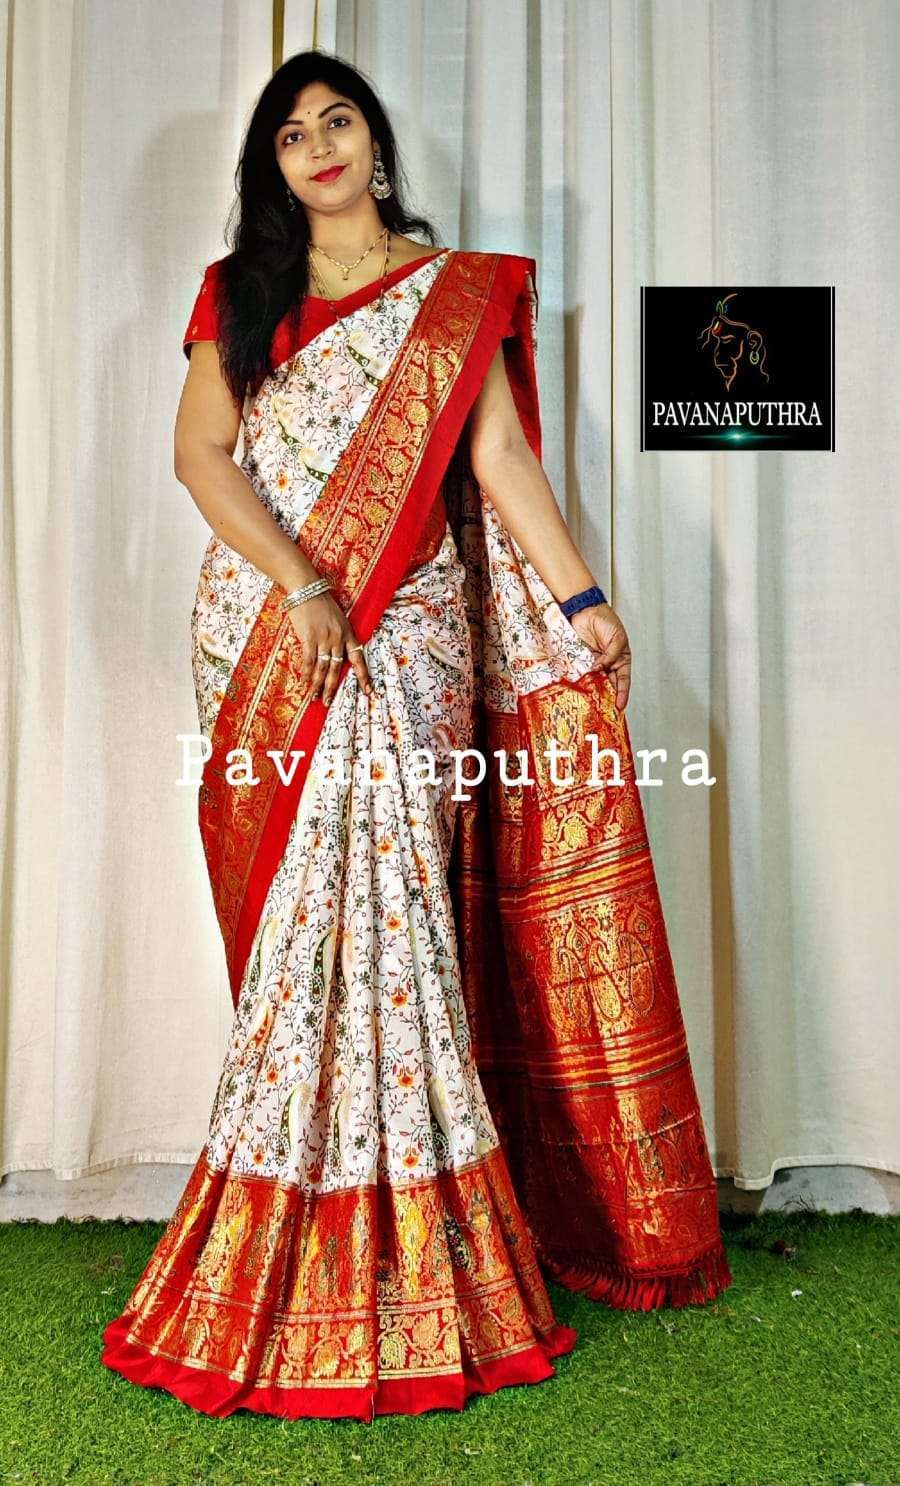 Kalamkari Saree In Bangalore - Designer Sarees Rs 500 to 1000 -  SareesWala.com